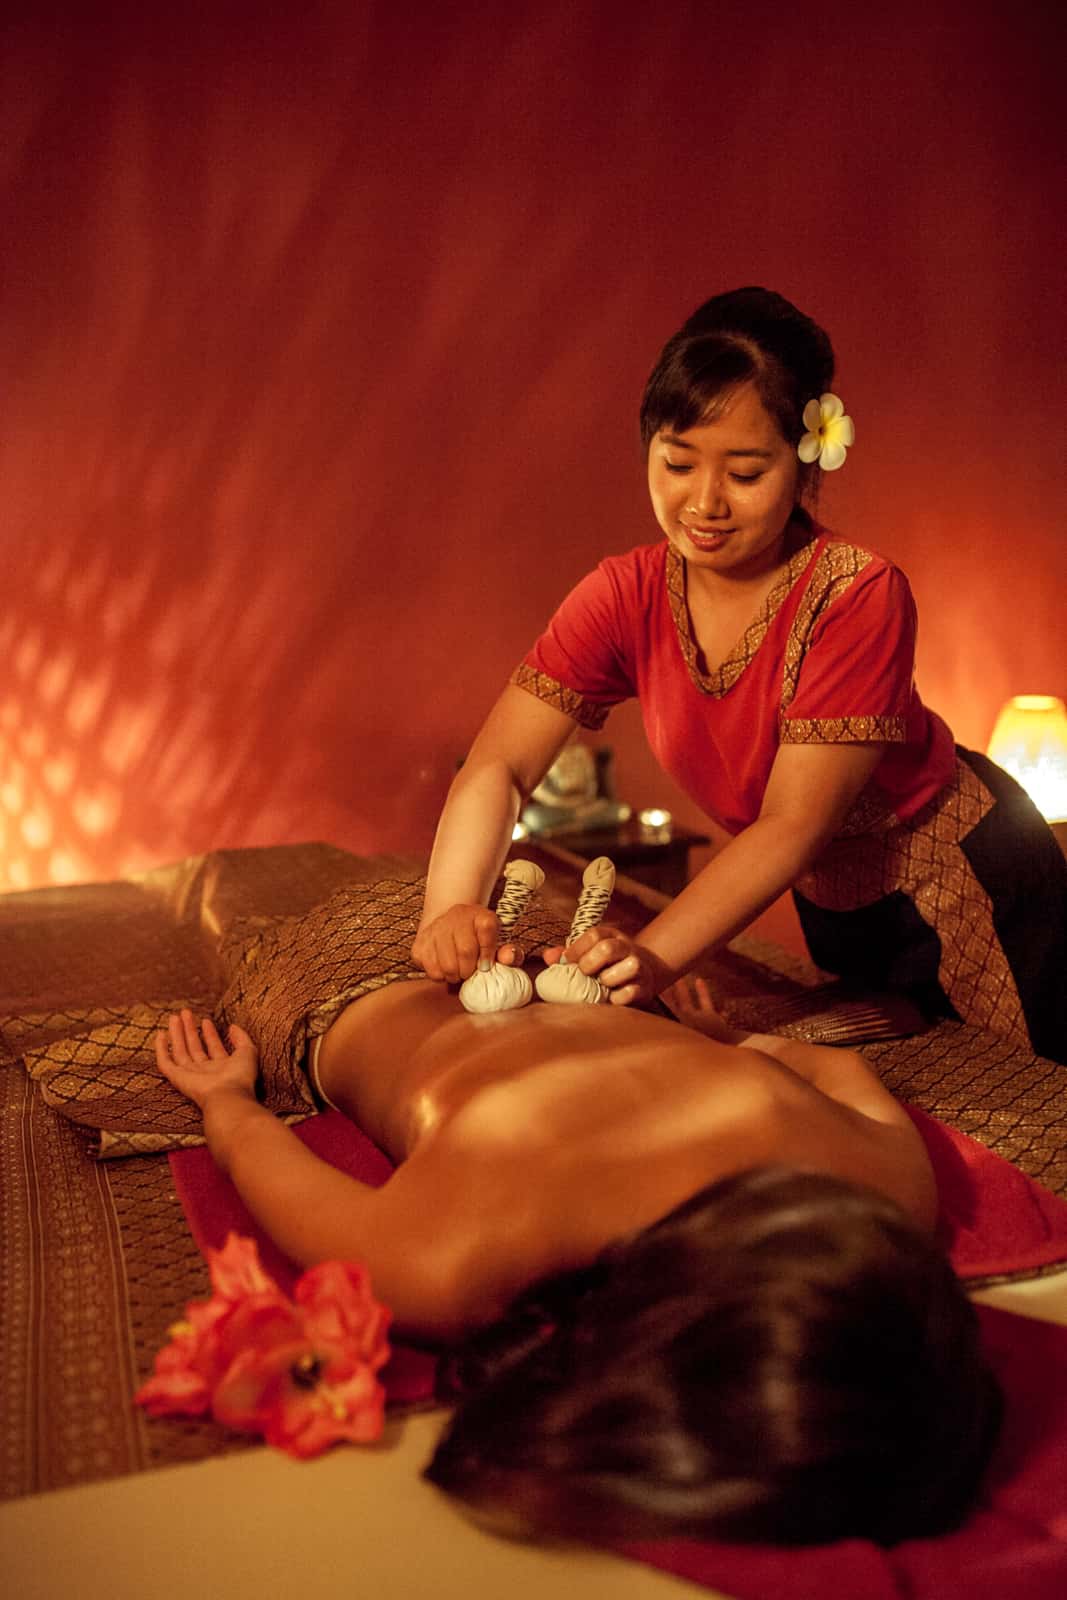 Tajski masaż stemplami ziołowymi, z racji wykorzystania leczniczych ziół, jest szczególnie polecany przy walce ze stanami zapalnymi.